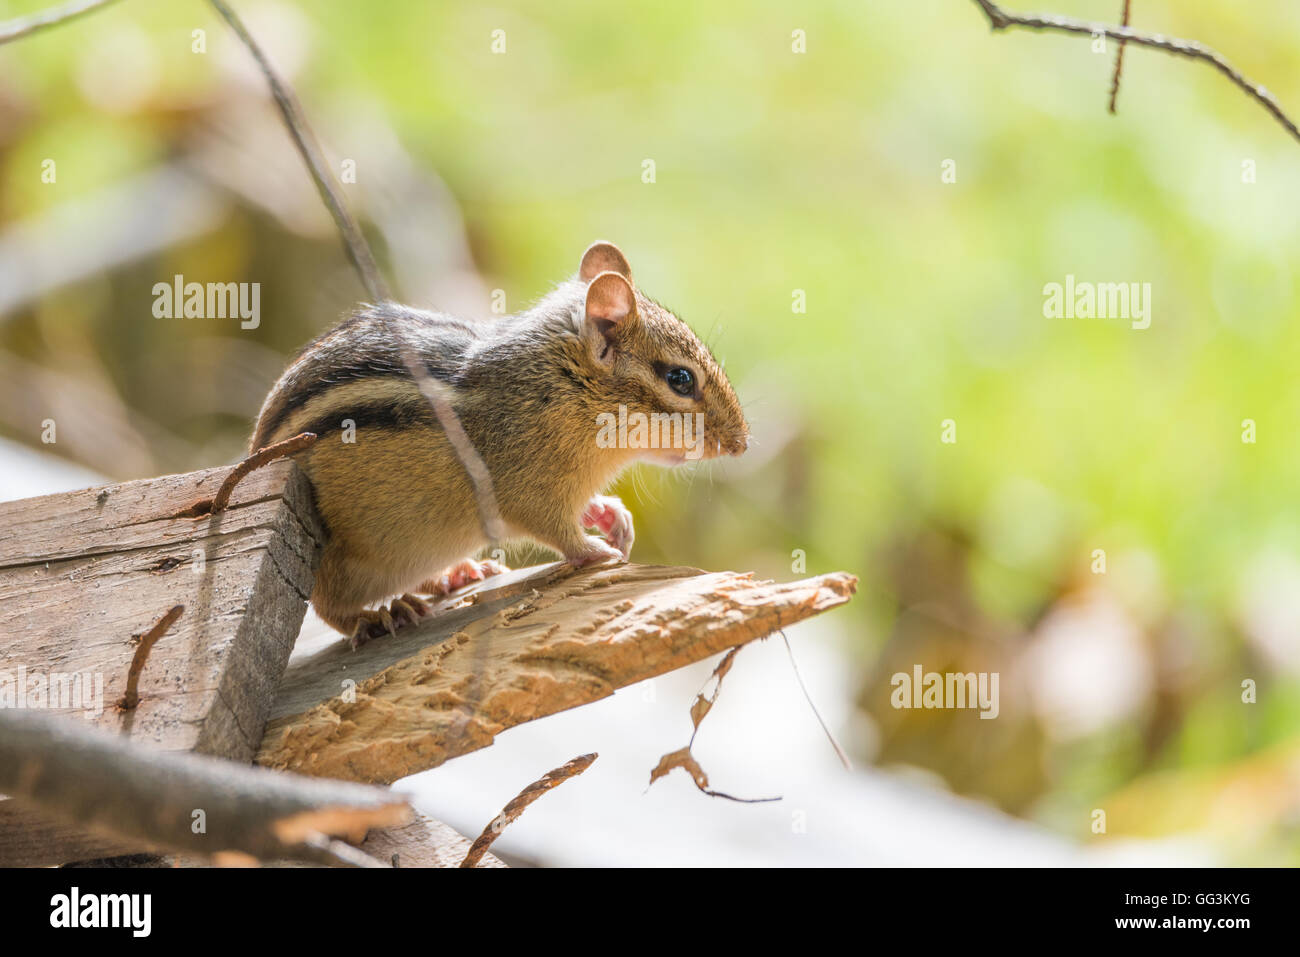 Streifenhörnchen (Tamias) sitzen auf der Holzstapel im Sonnenlicht, Pausen, um seine Sommer-Umgebung zu überblicken.  Hält ein Auge auf ein anderes. Stockfoto